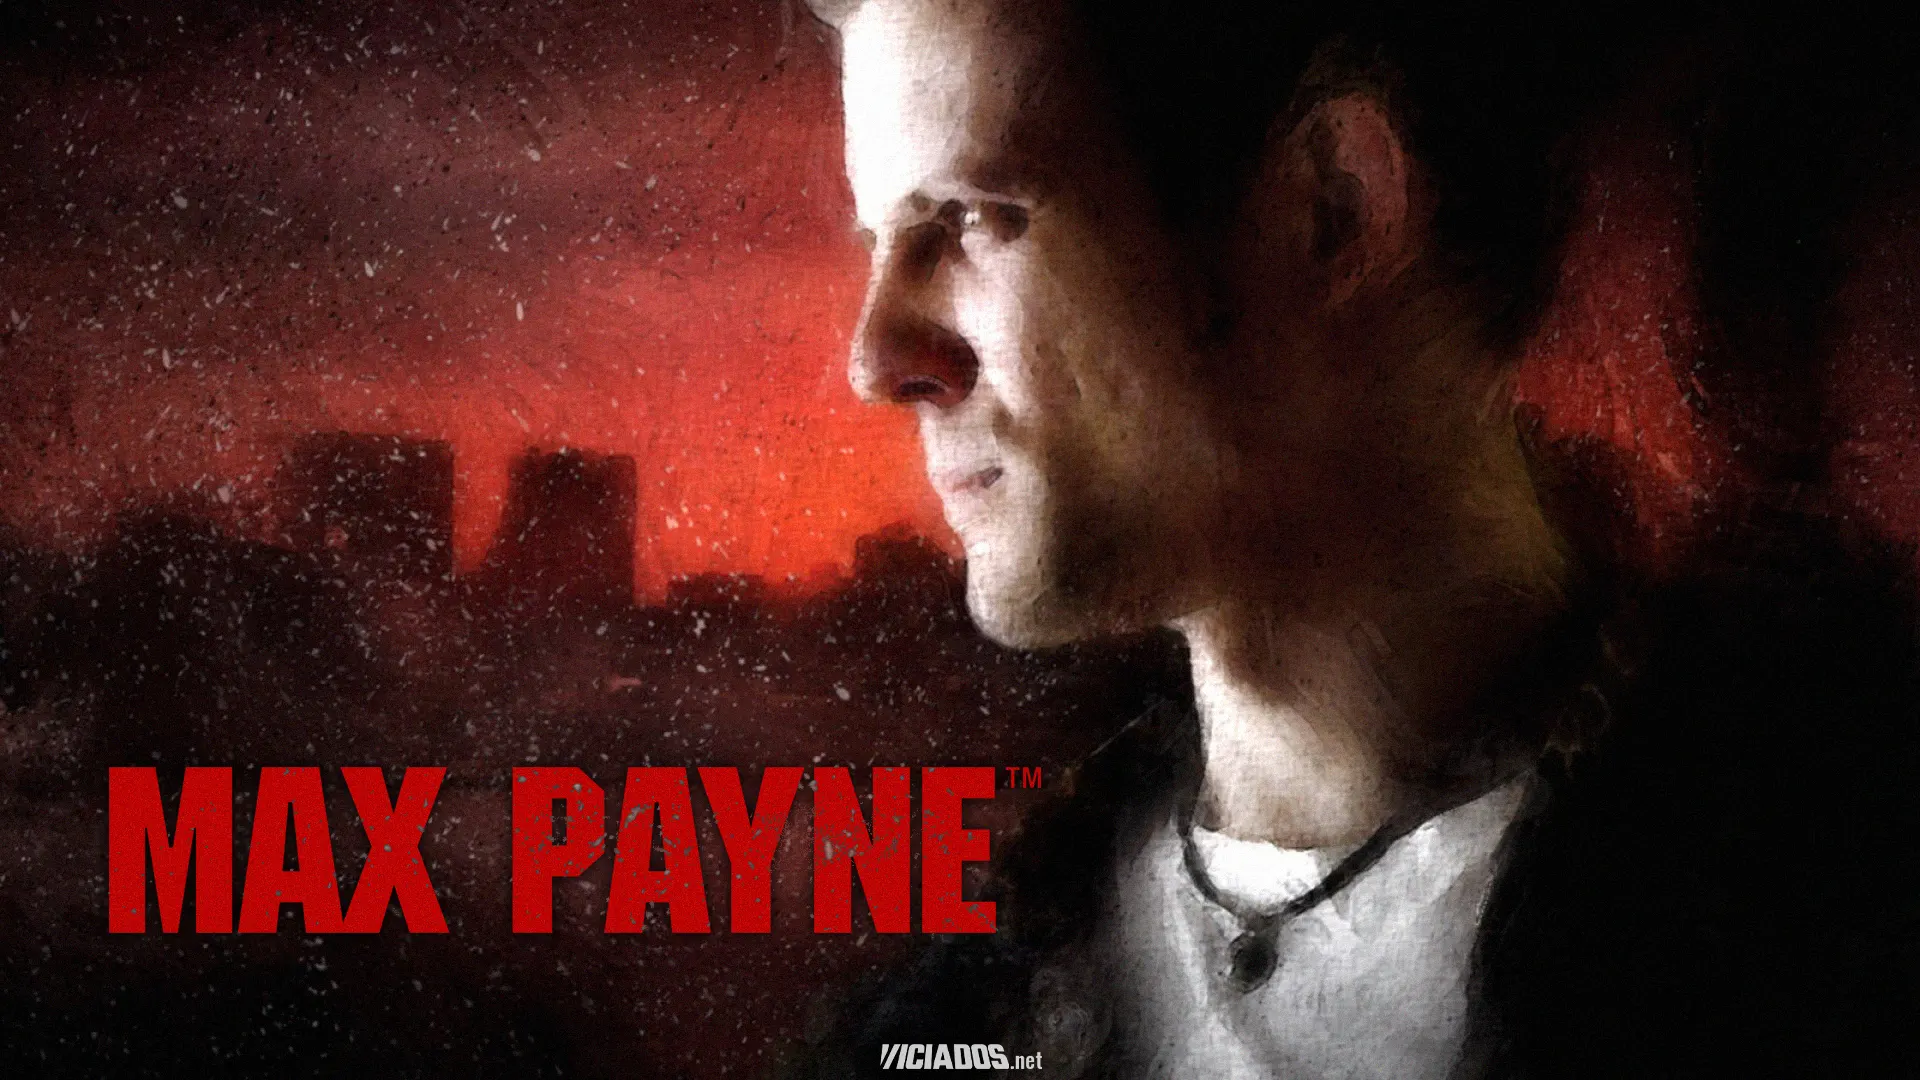 Max Payne | Incrível: Após 22 anos, fã encontra rádio misteriosa no jogo 2023 Viciados